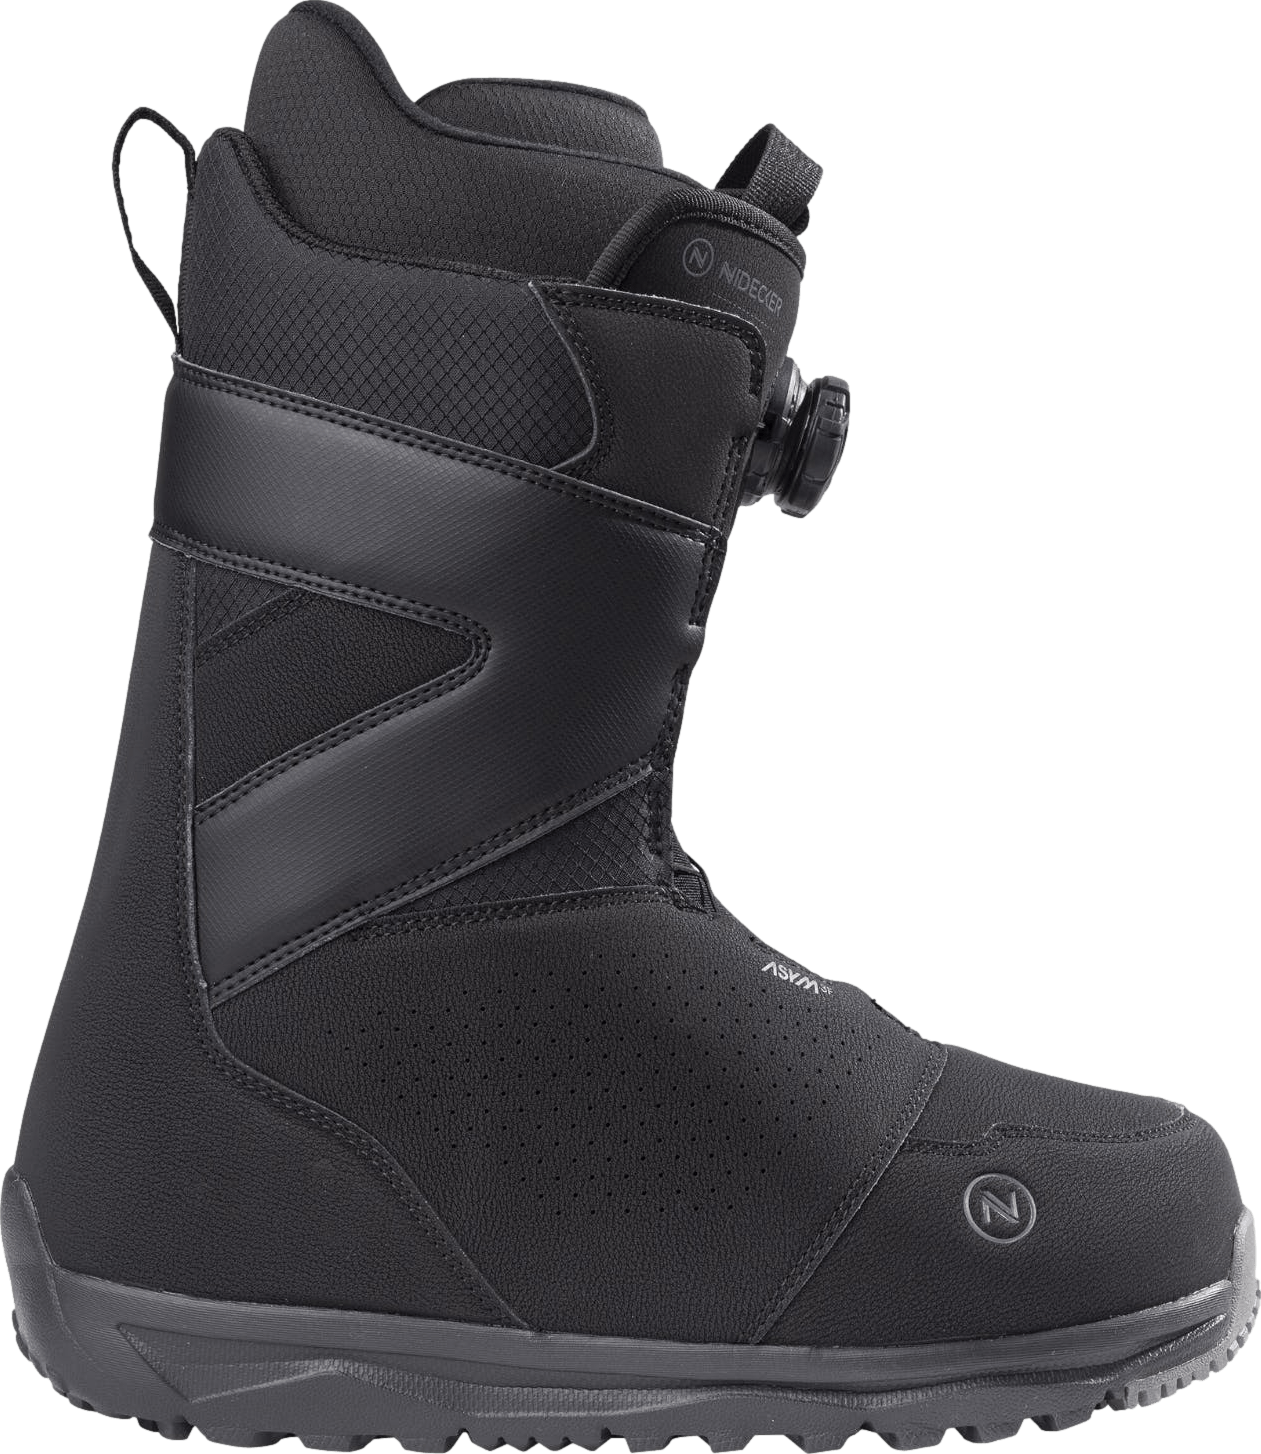 Nidecker Cascade Snowboard Boots · 2023